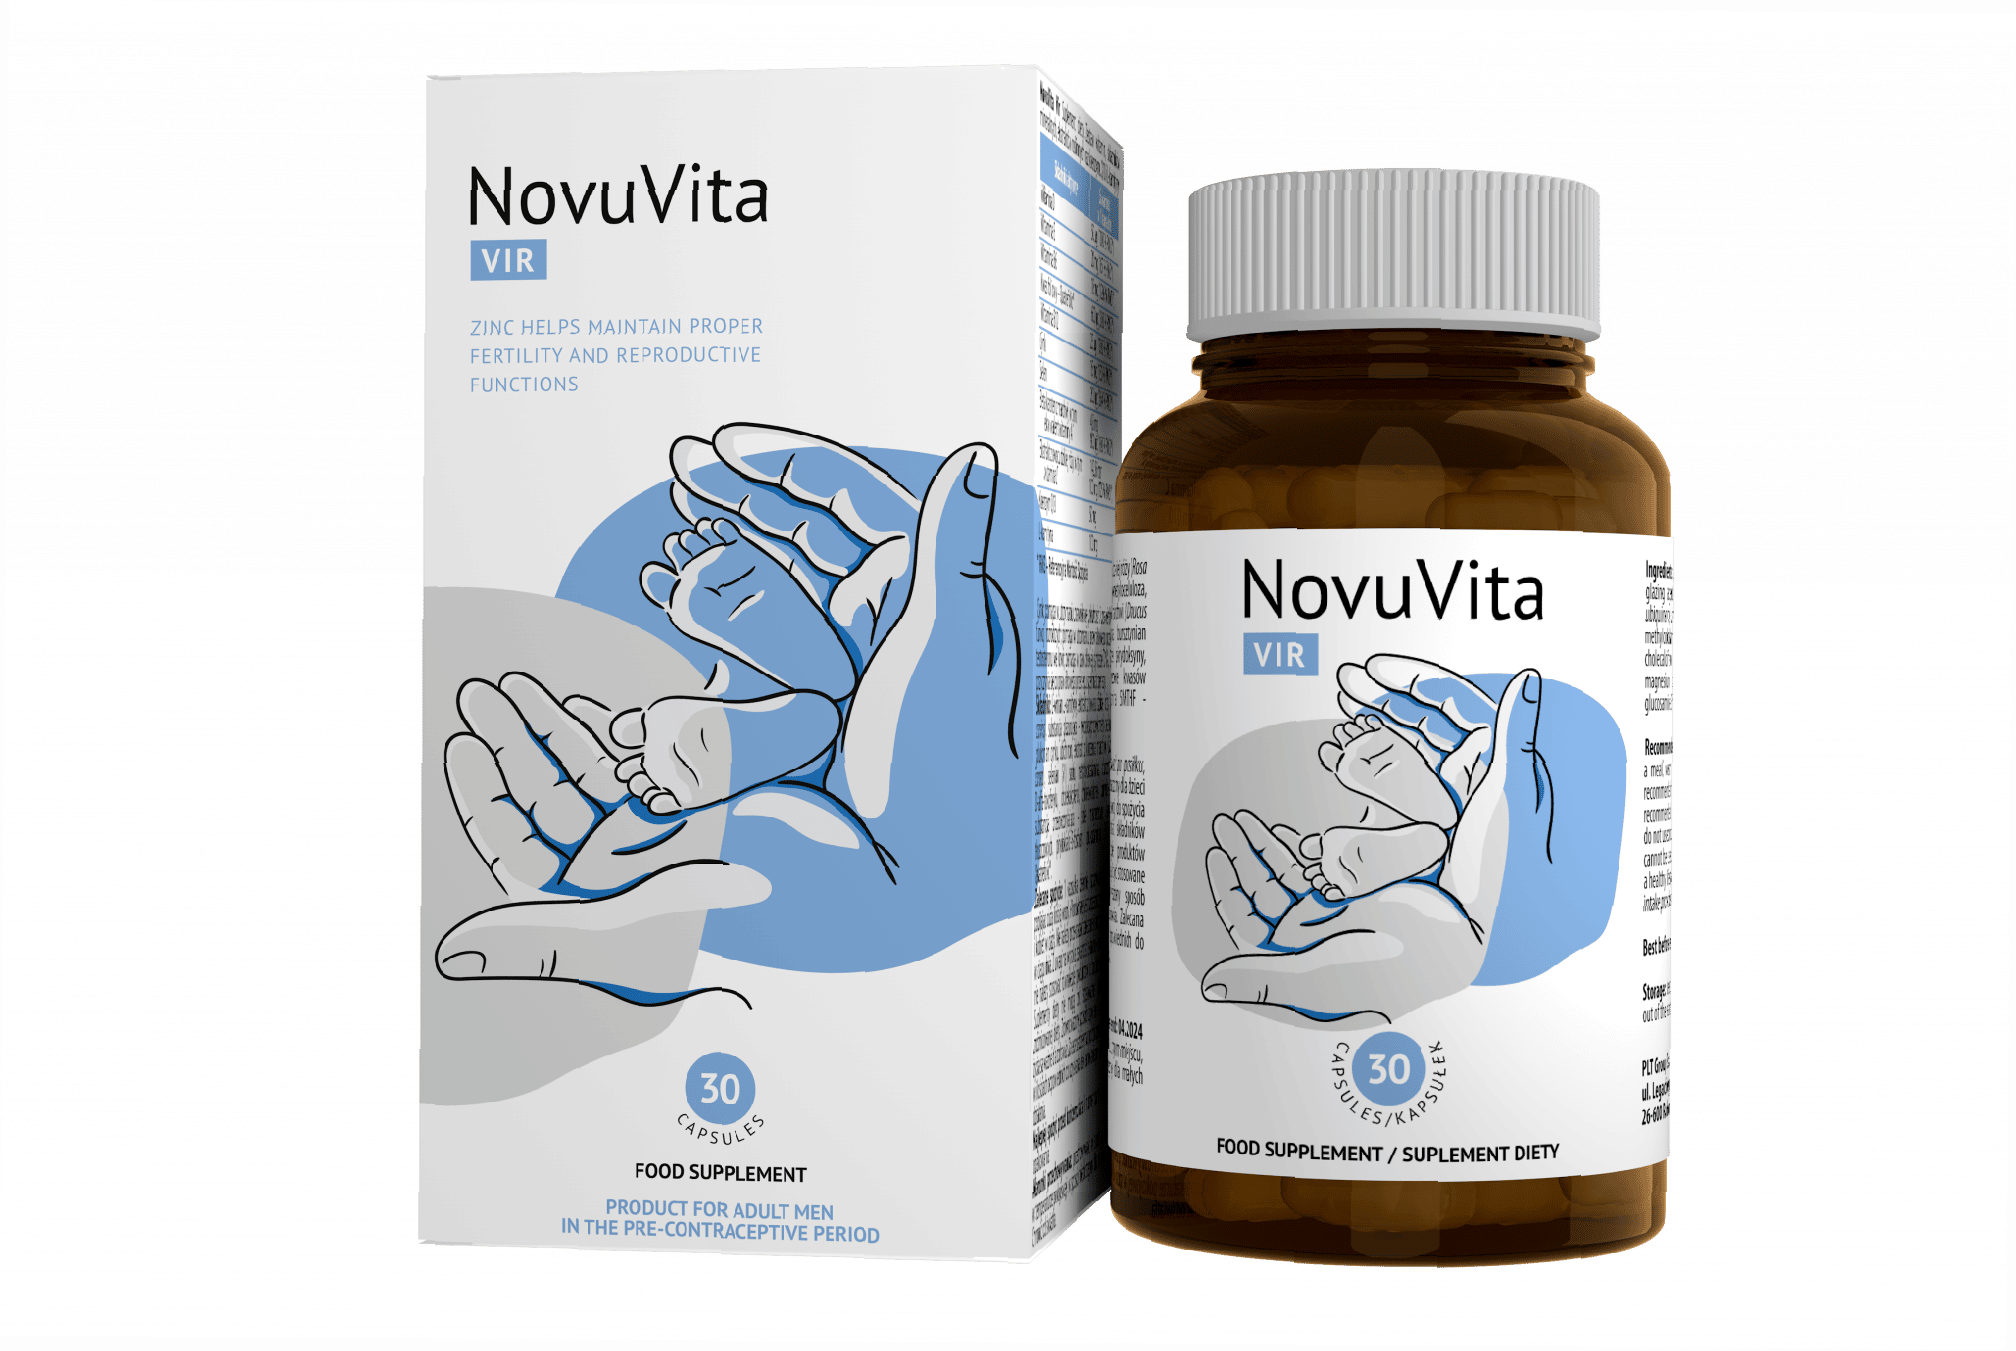 NovuVita Vir - ¿Qué es? ¿Qué tipo de producto